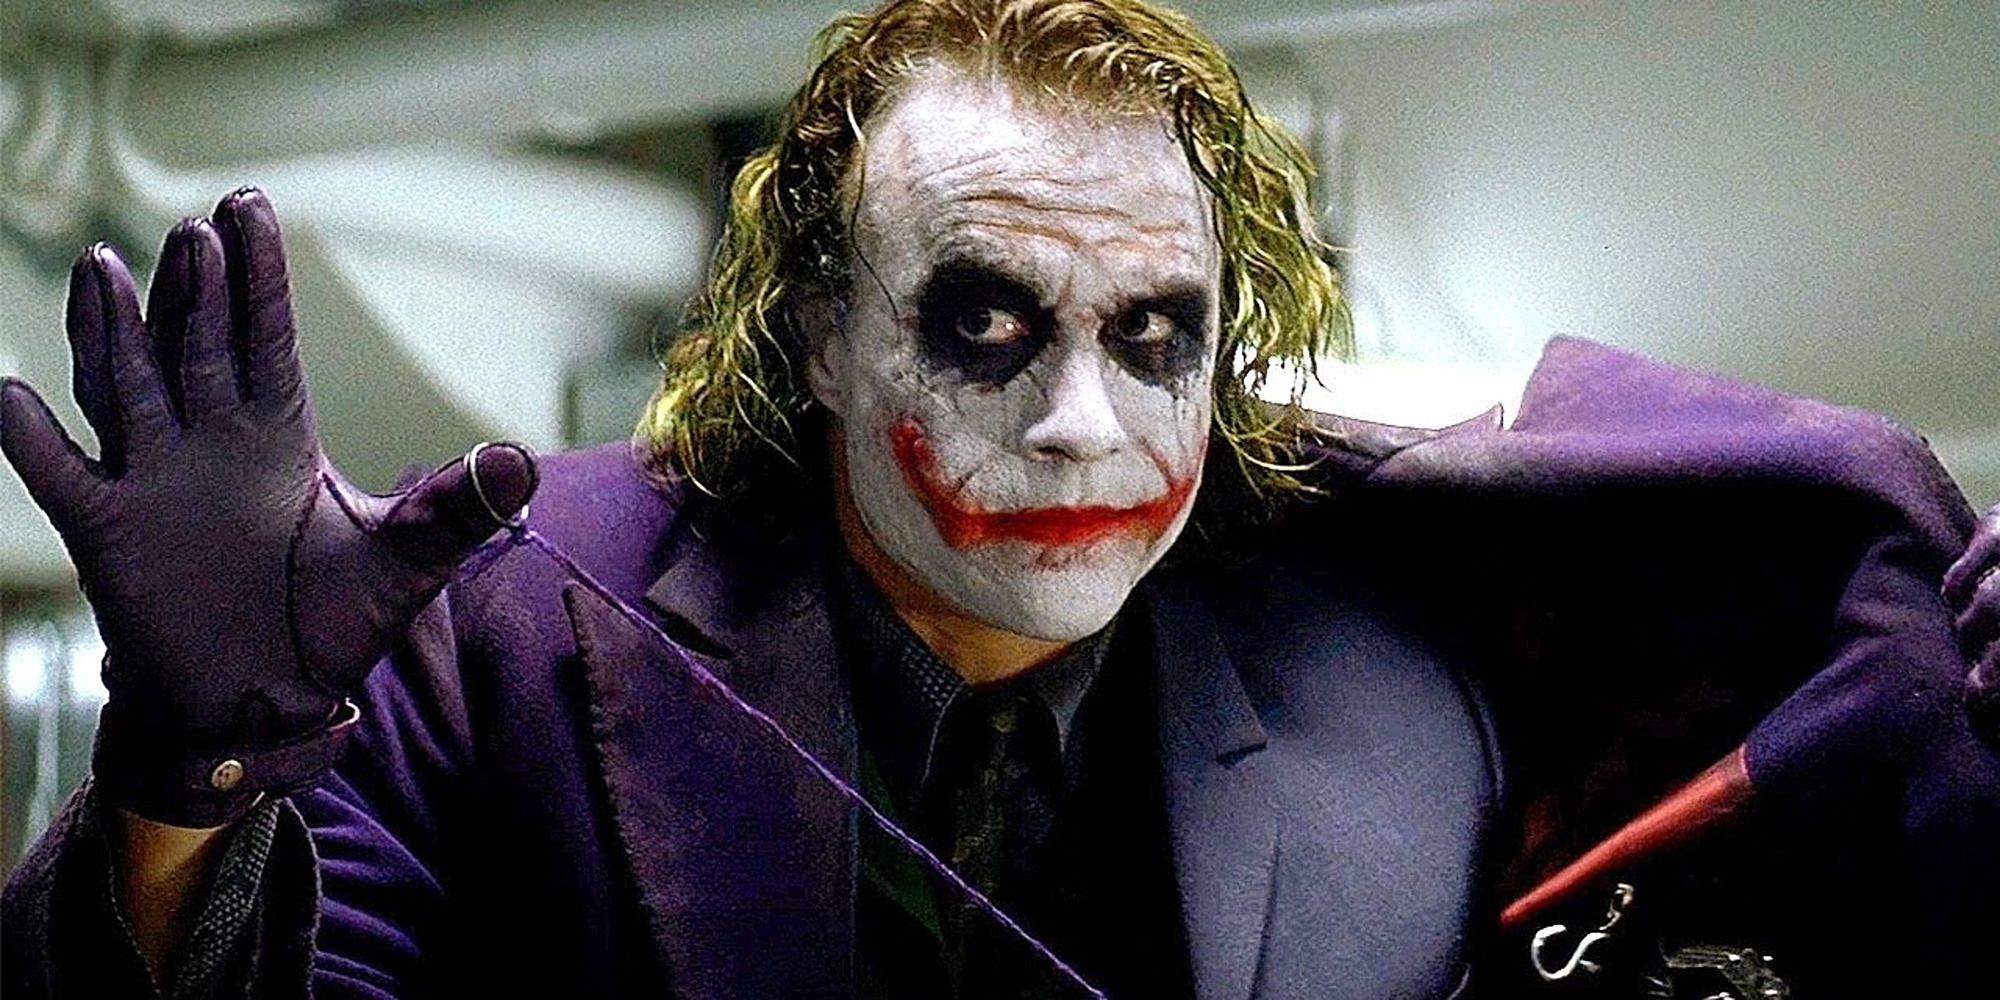 El Joker de The Dark Knight amenaza a los criminales con una granada en su abrigo